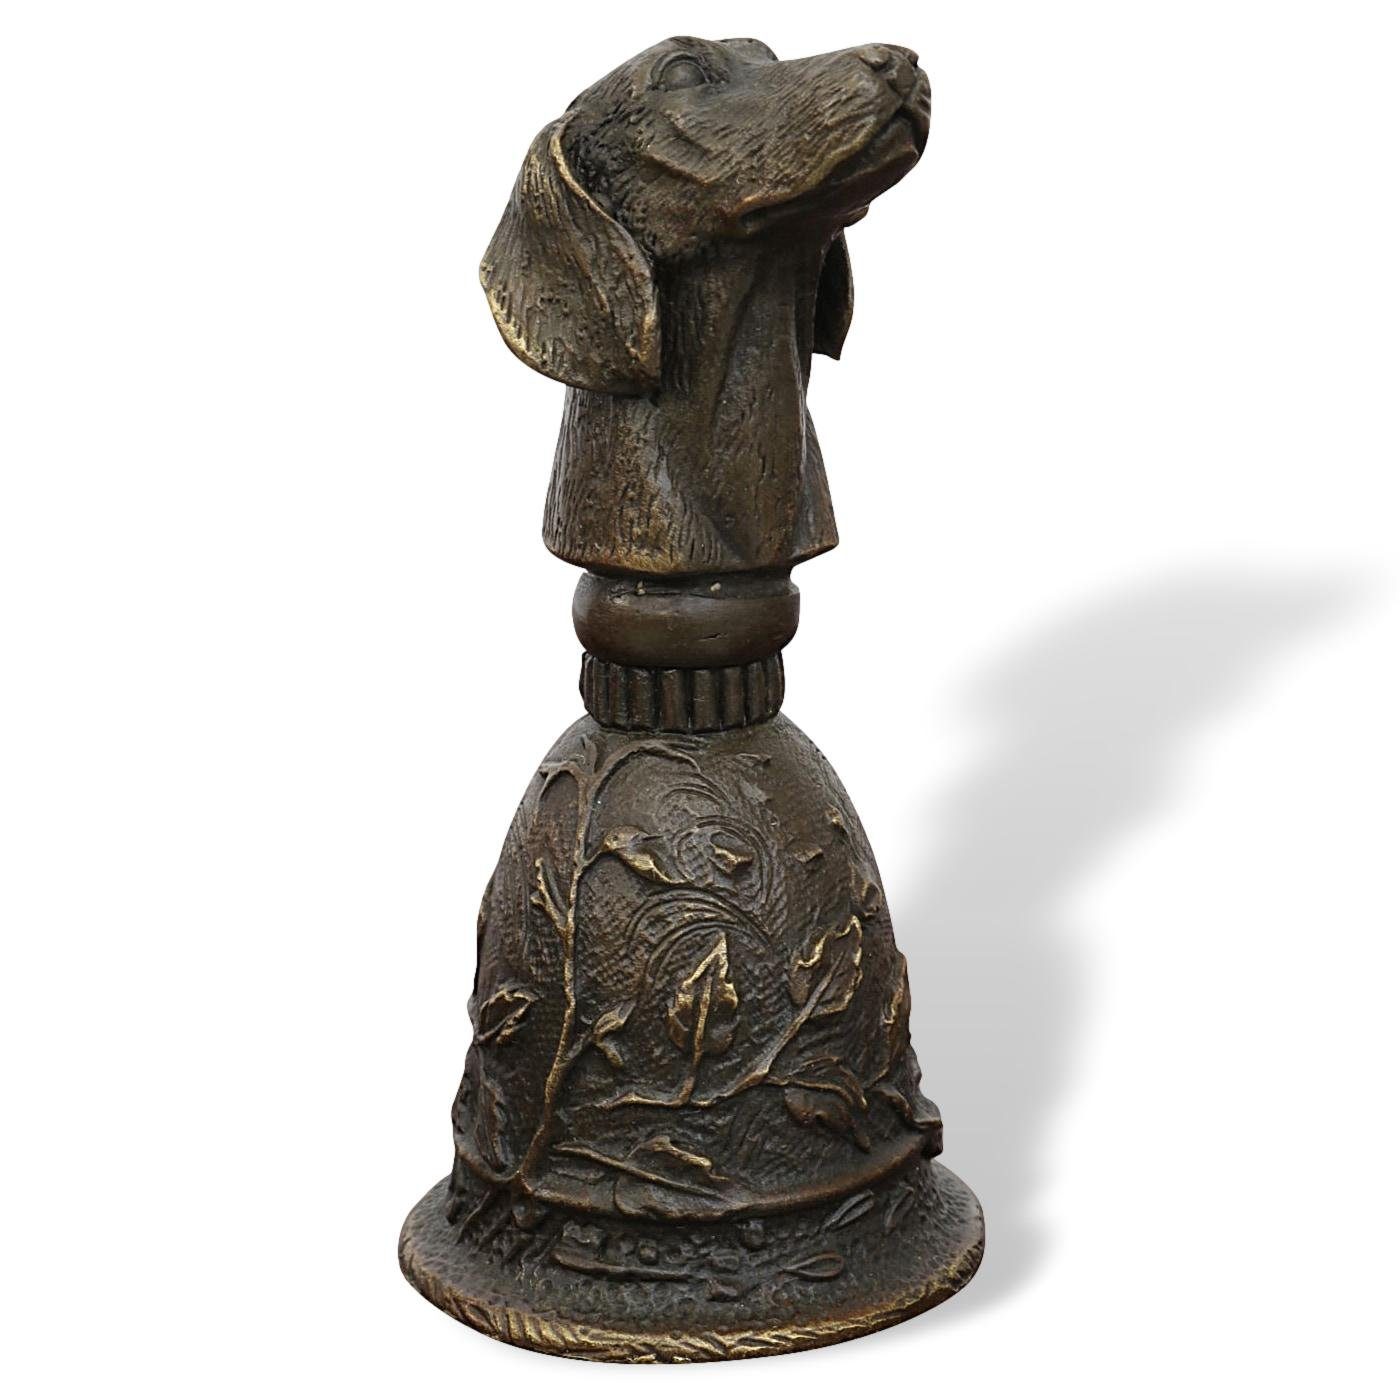 Aubaho Dekoobjekt Tischglocke Hund Handglocke Glocke Bronzeskulptur Antik-Stil Bronze Figur | Deko-Objekte